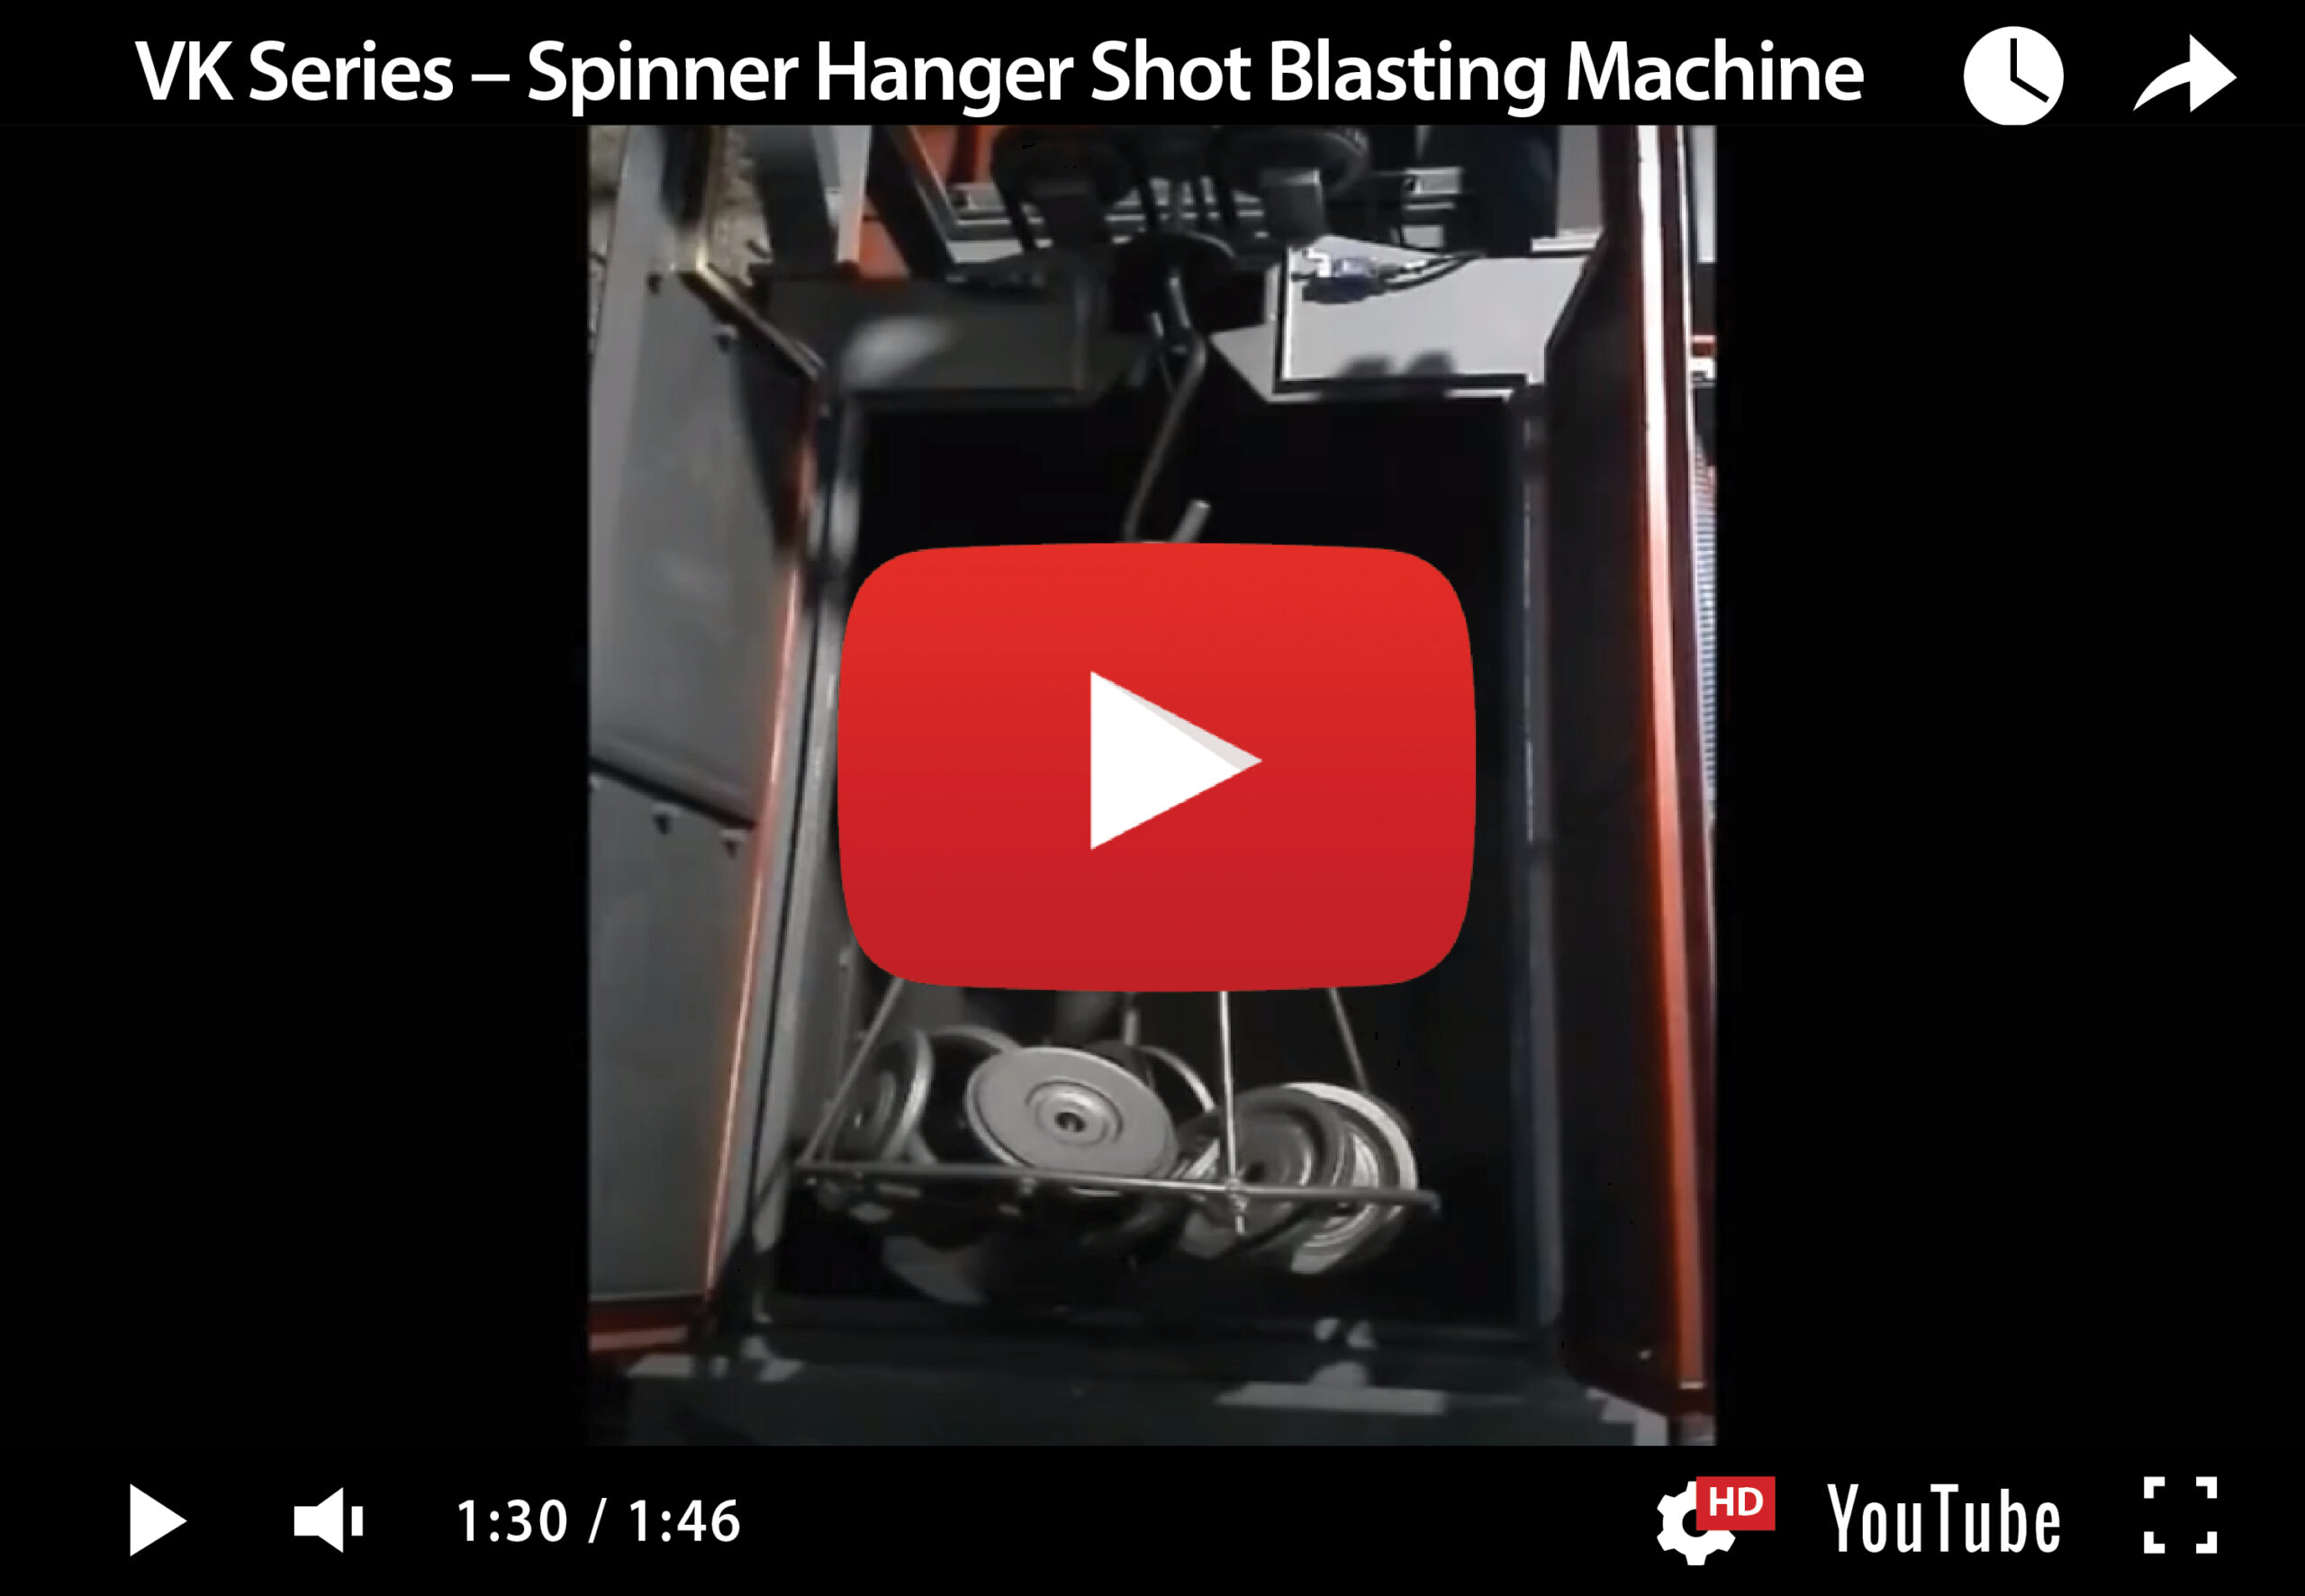 VK Series – Spinner Hanger Shot Blasting Machine